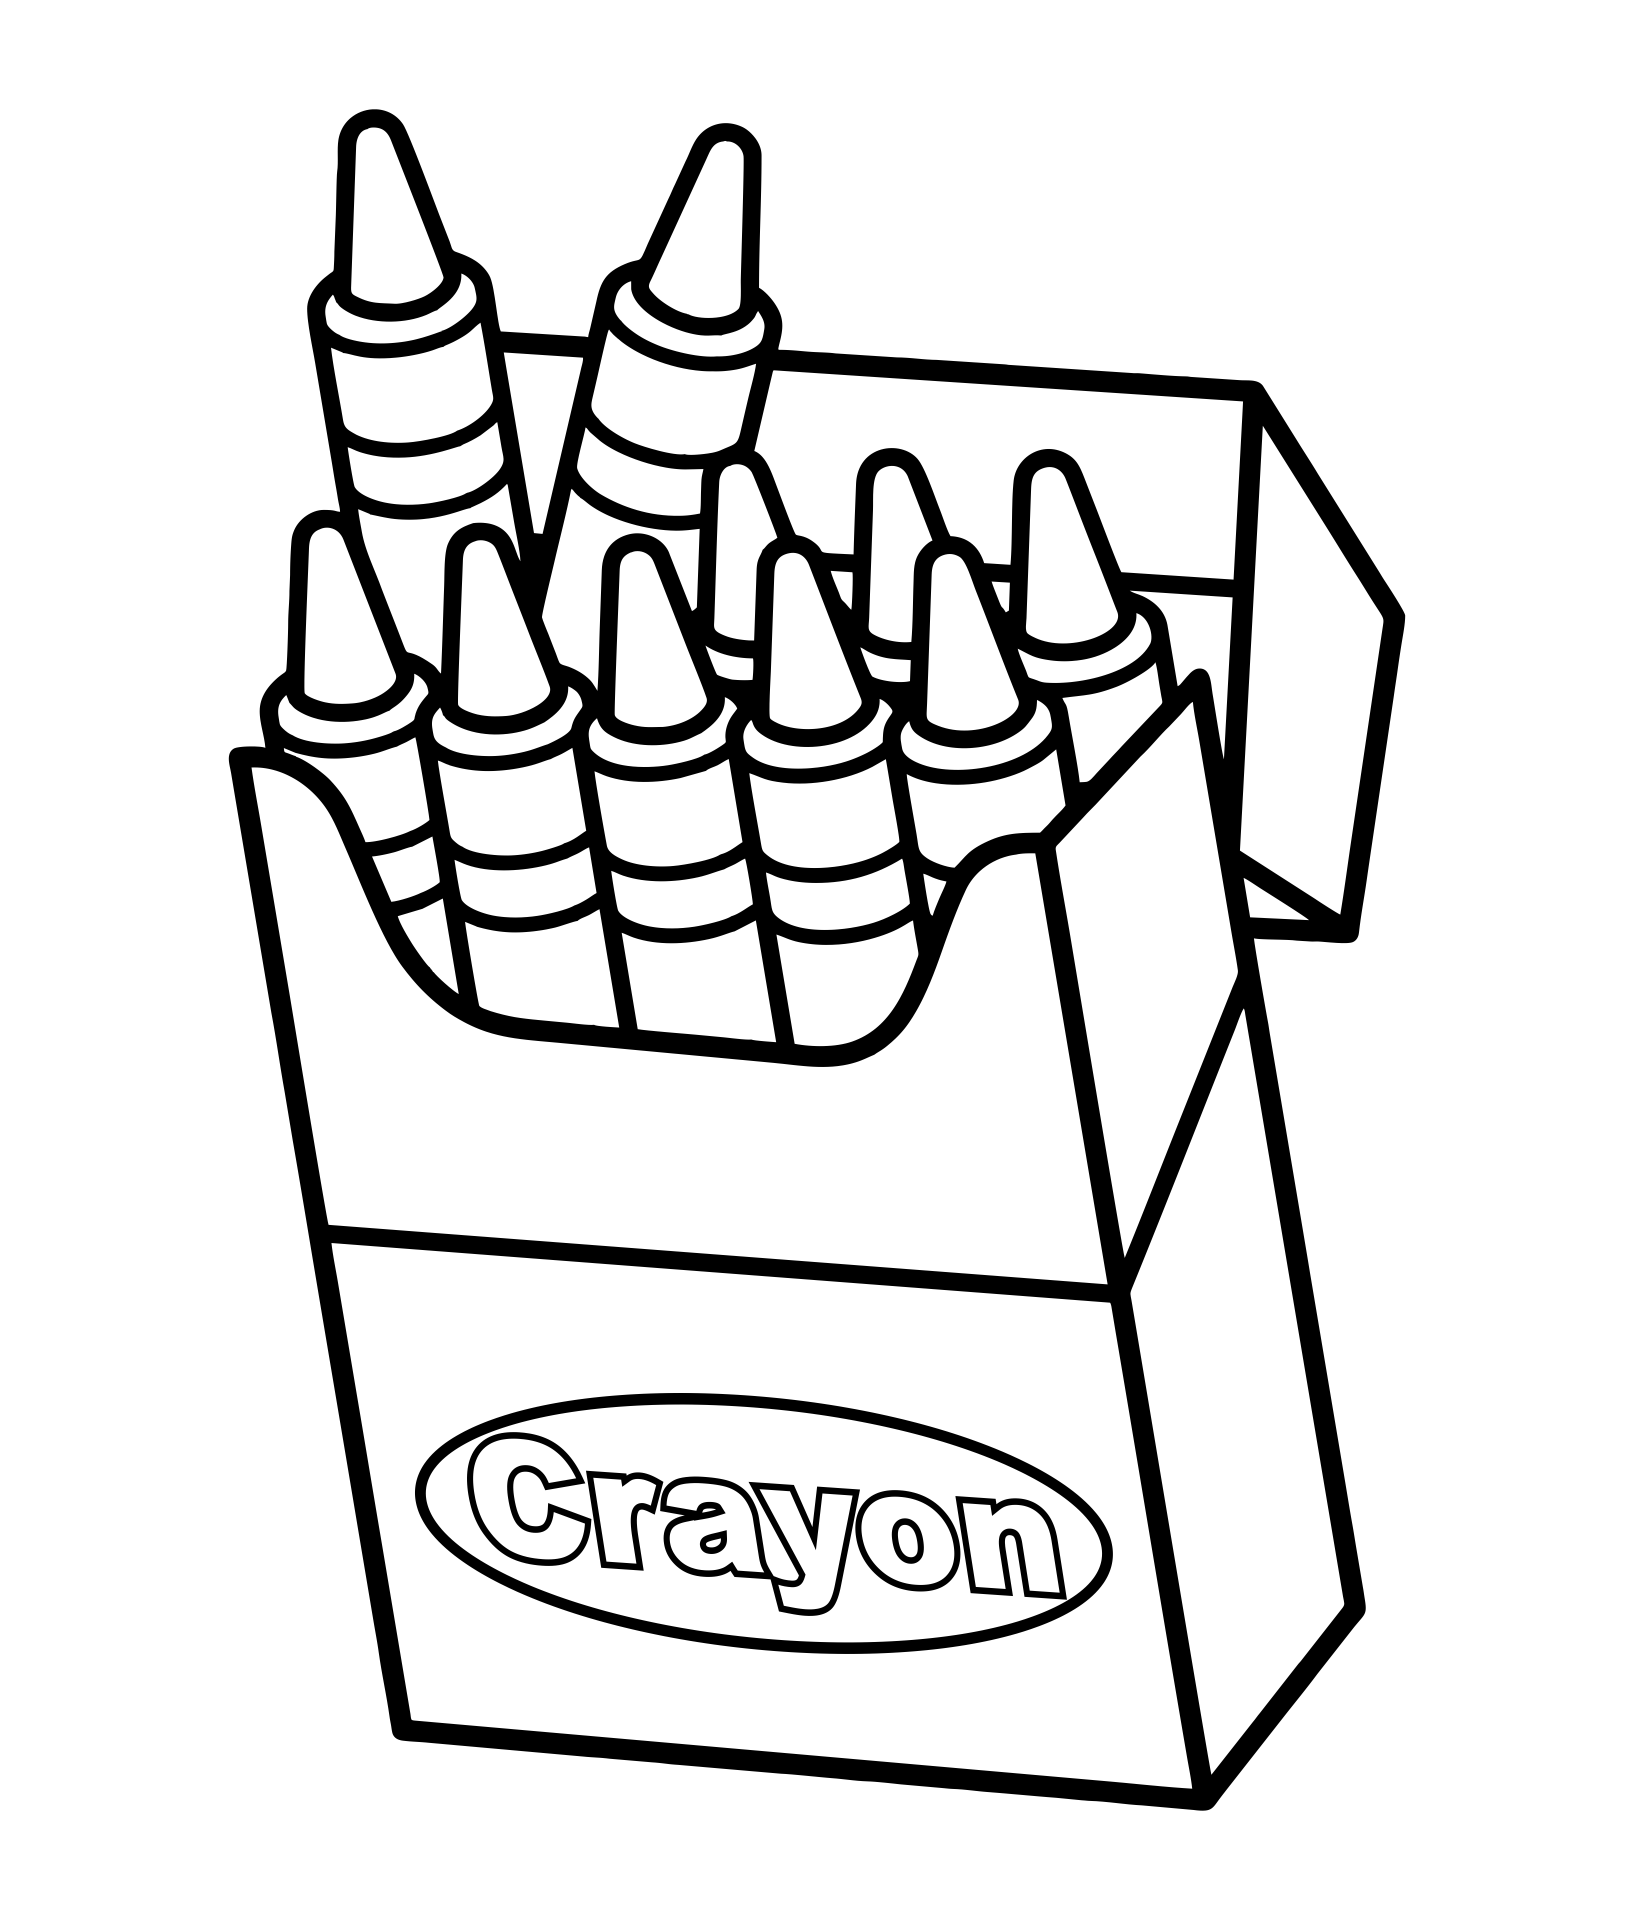 crayon-template-printable-free